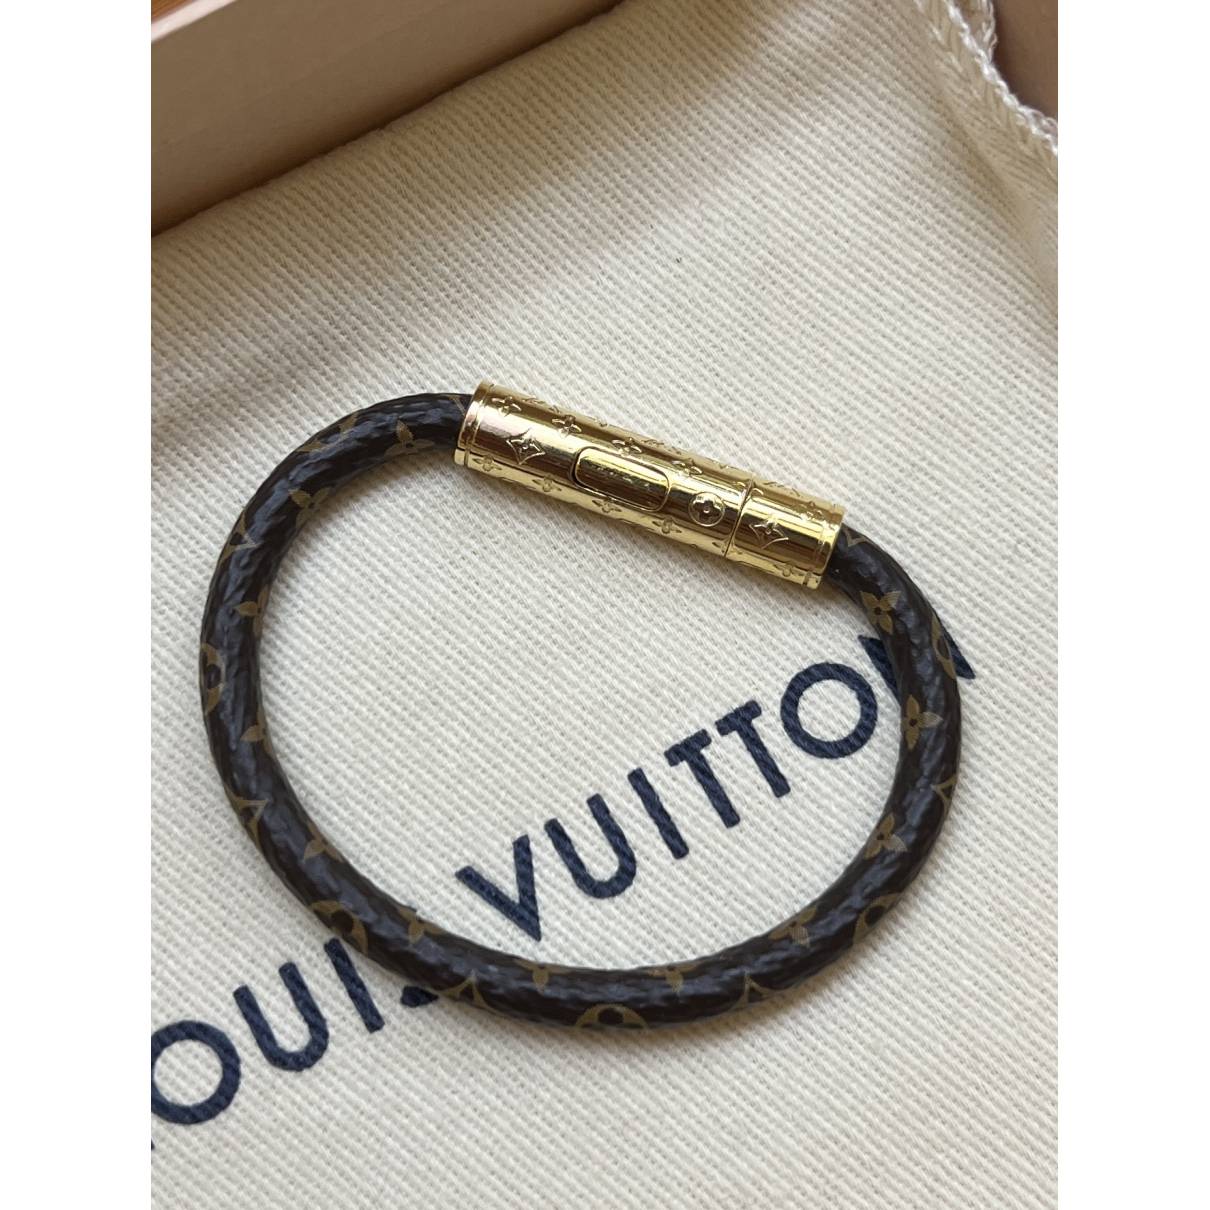 Louis Vuitton - LV Confidential Bracelet - Monogram - Brown - Size: 19 - Luxury